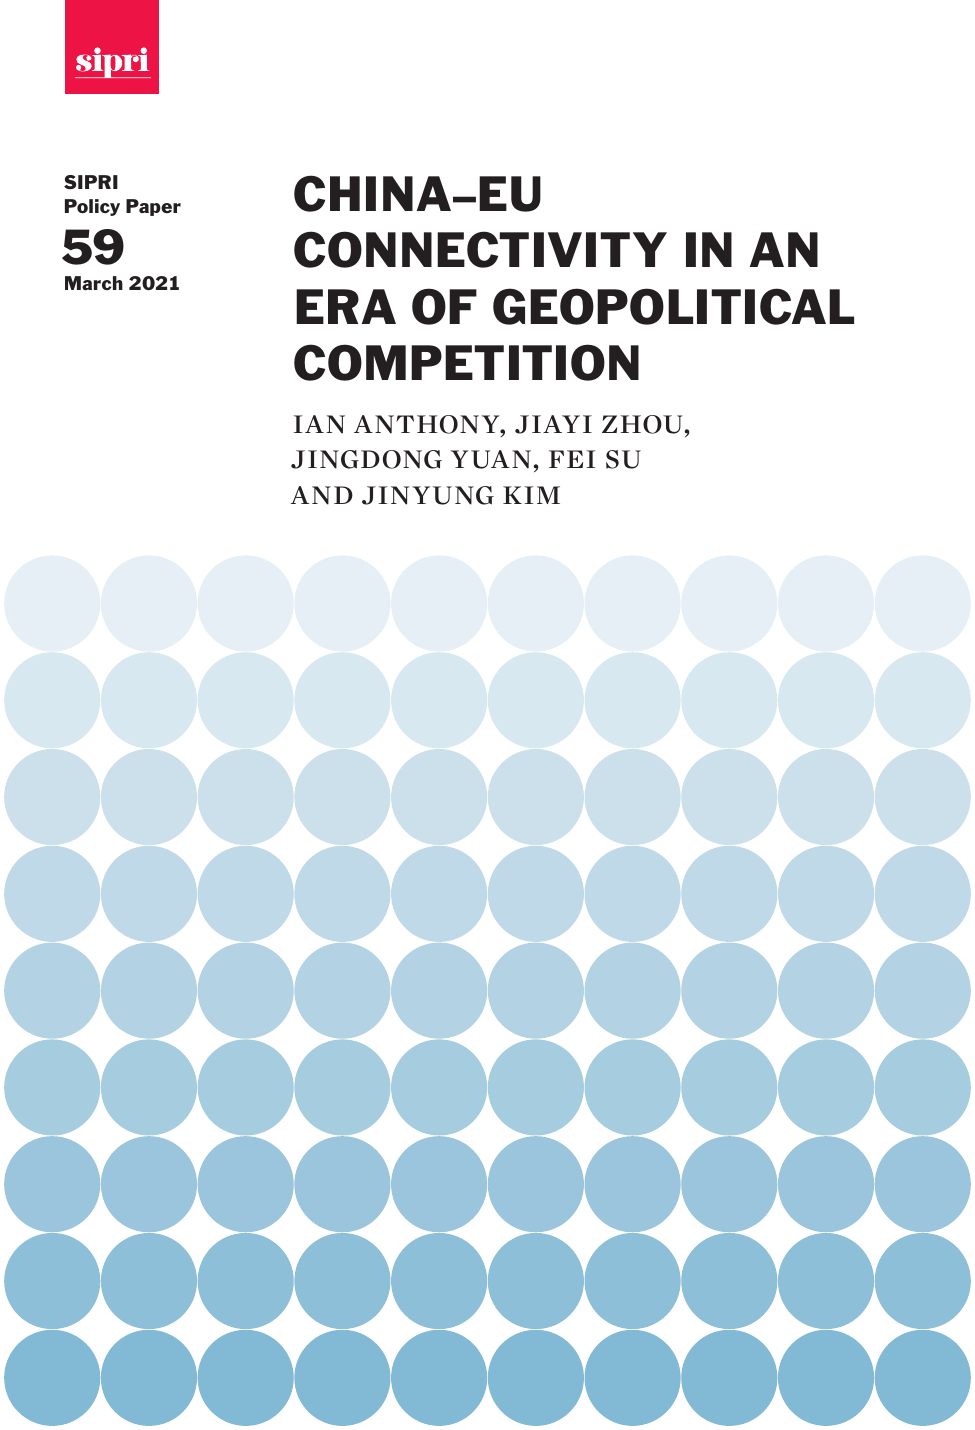 地缘政治竞争时代的中欧互联互通（英）-欧洲智库-2021.3-64页